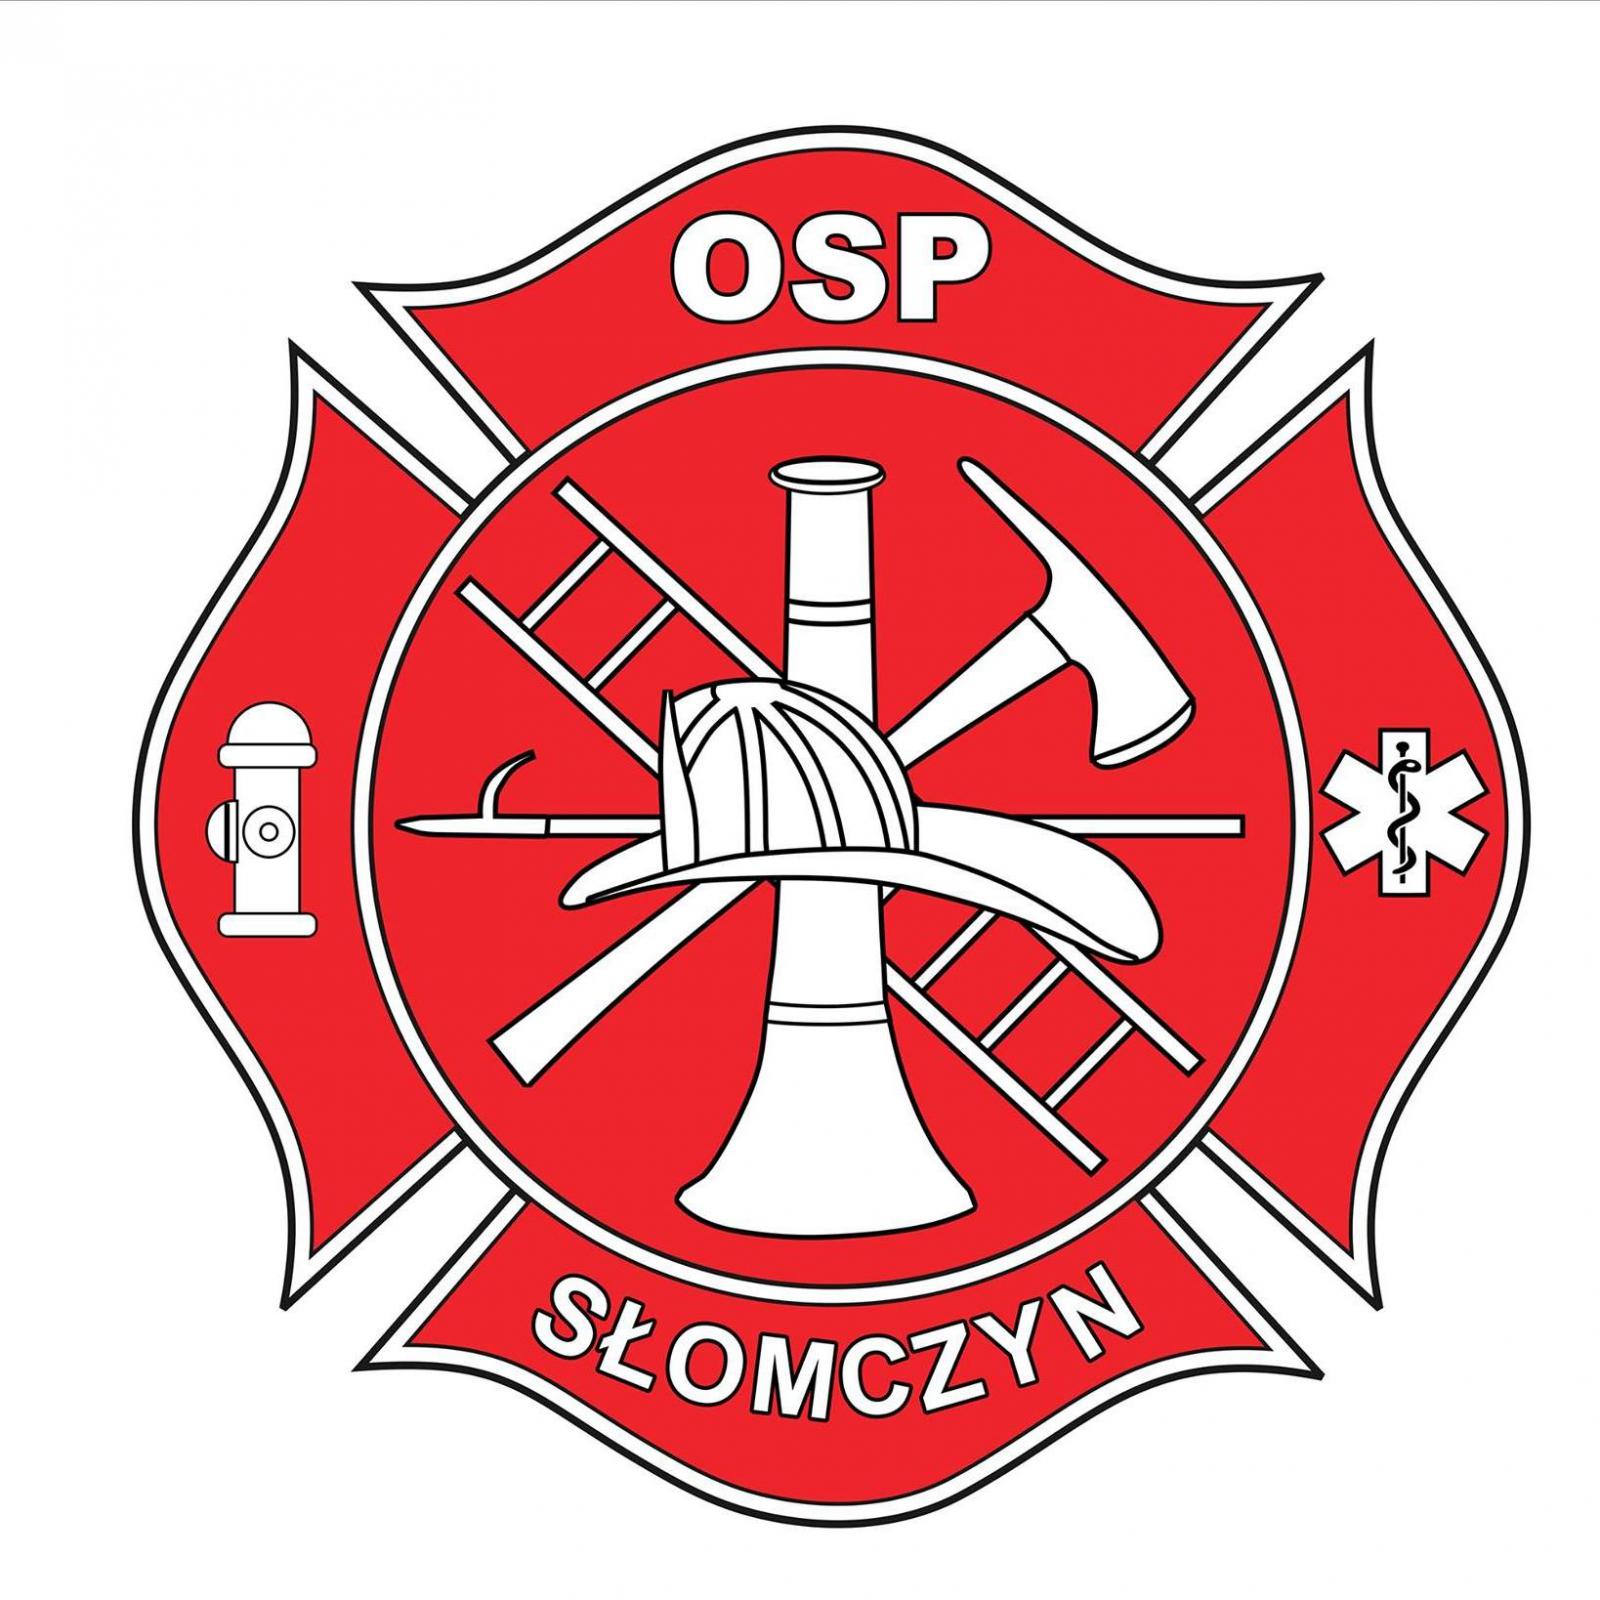 Znak w niereguralnym okręgu, pośrodku hełm strażacki z bosakiem, toporkami, drabiną i hydrantem, i góry napis OSP ,a dole Słomczyn